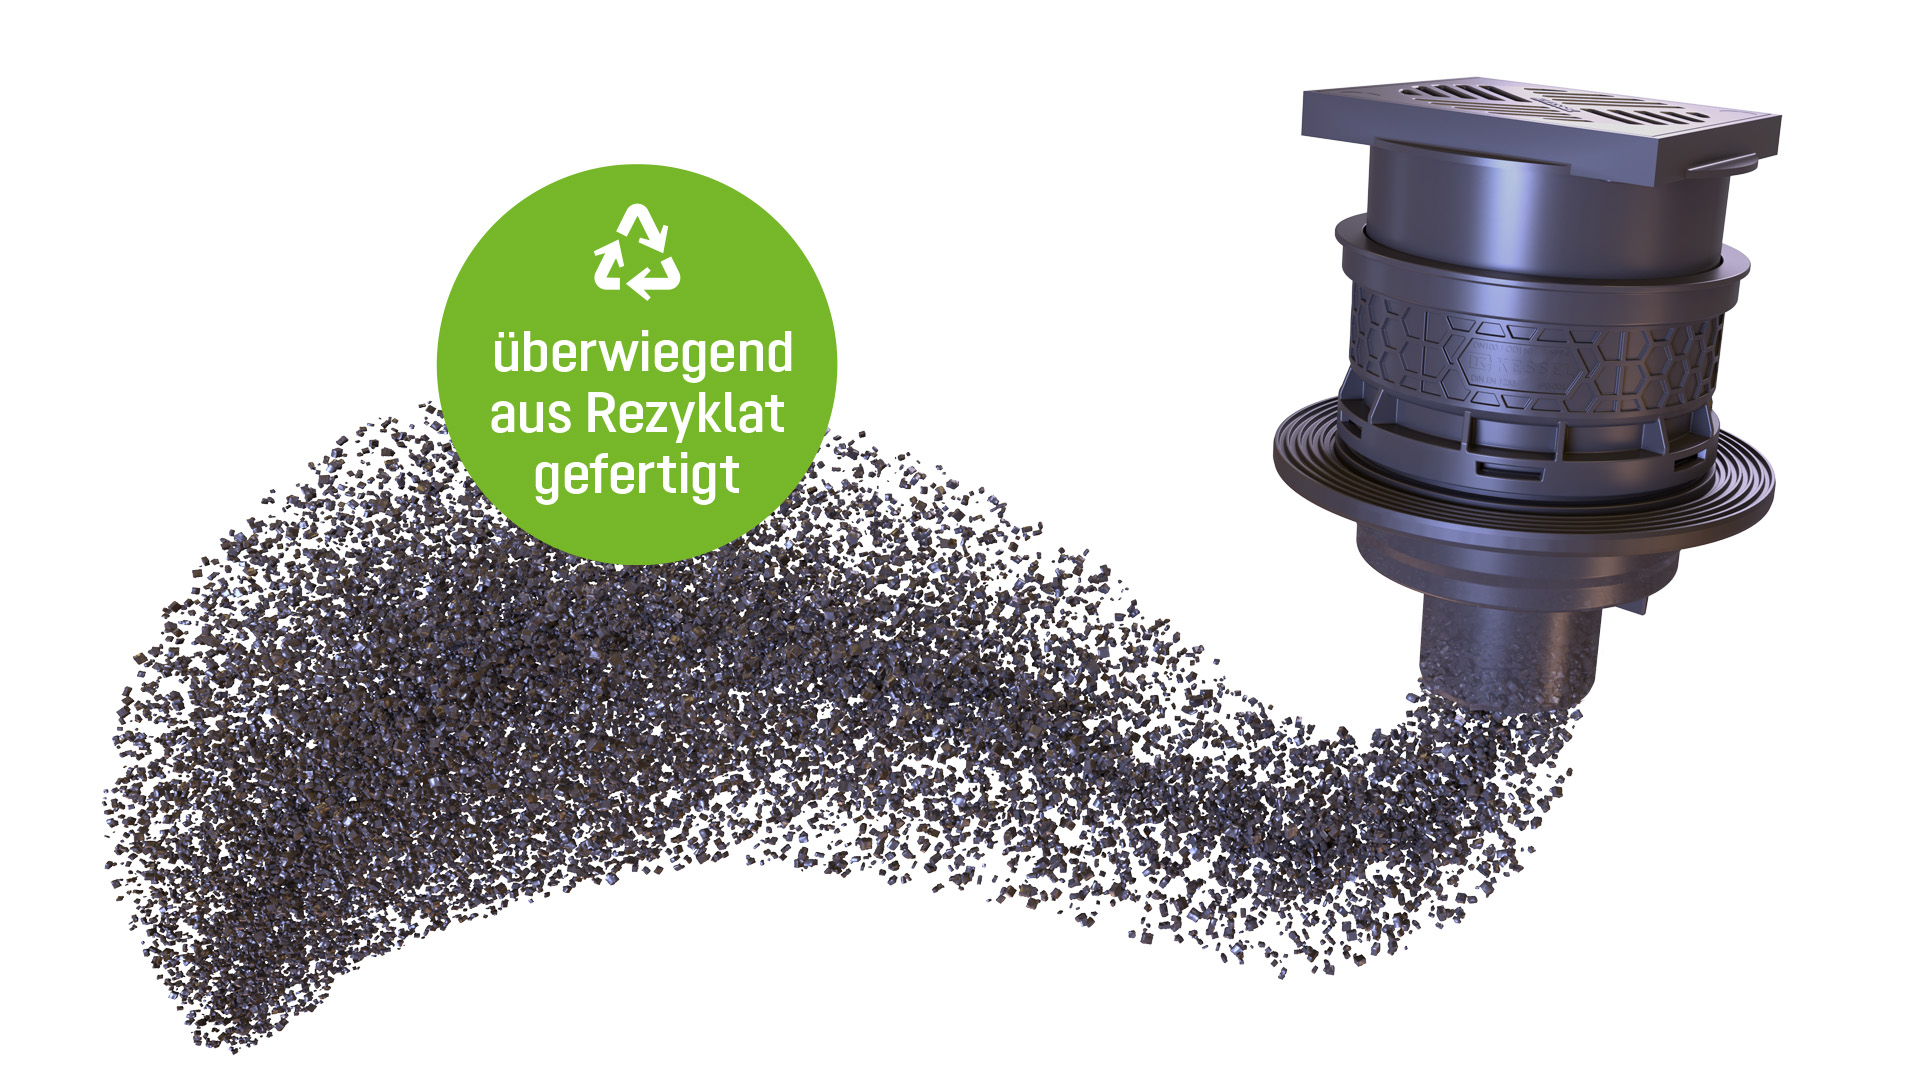 [Translate to Deutsch (DE):] Kellerablauf zum überwiegenden Teil aus recyceltem Material gefertigt.